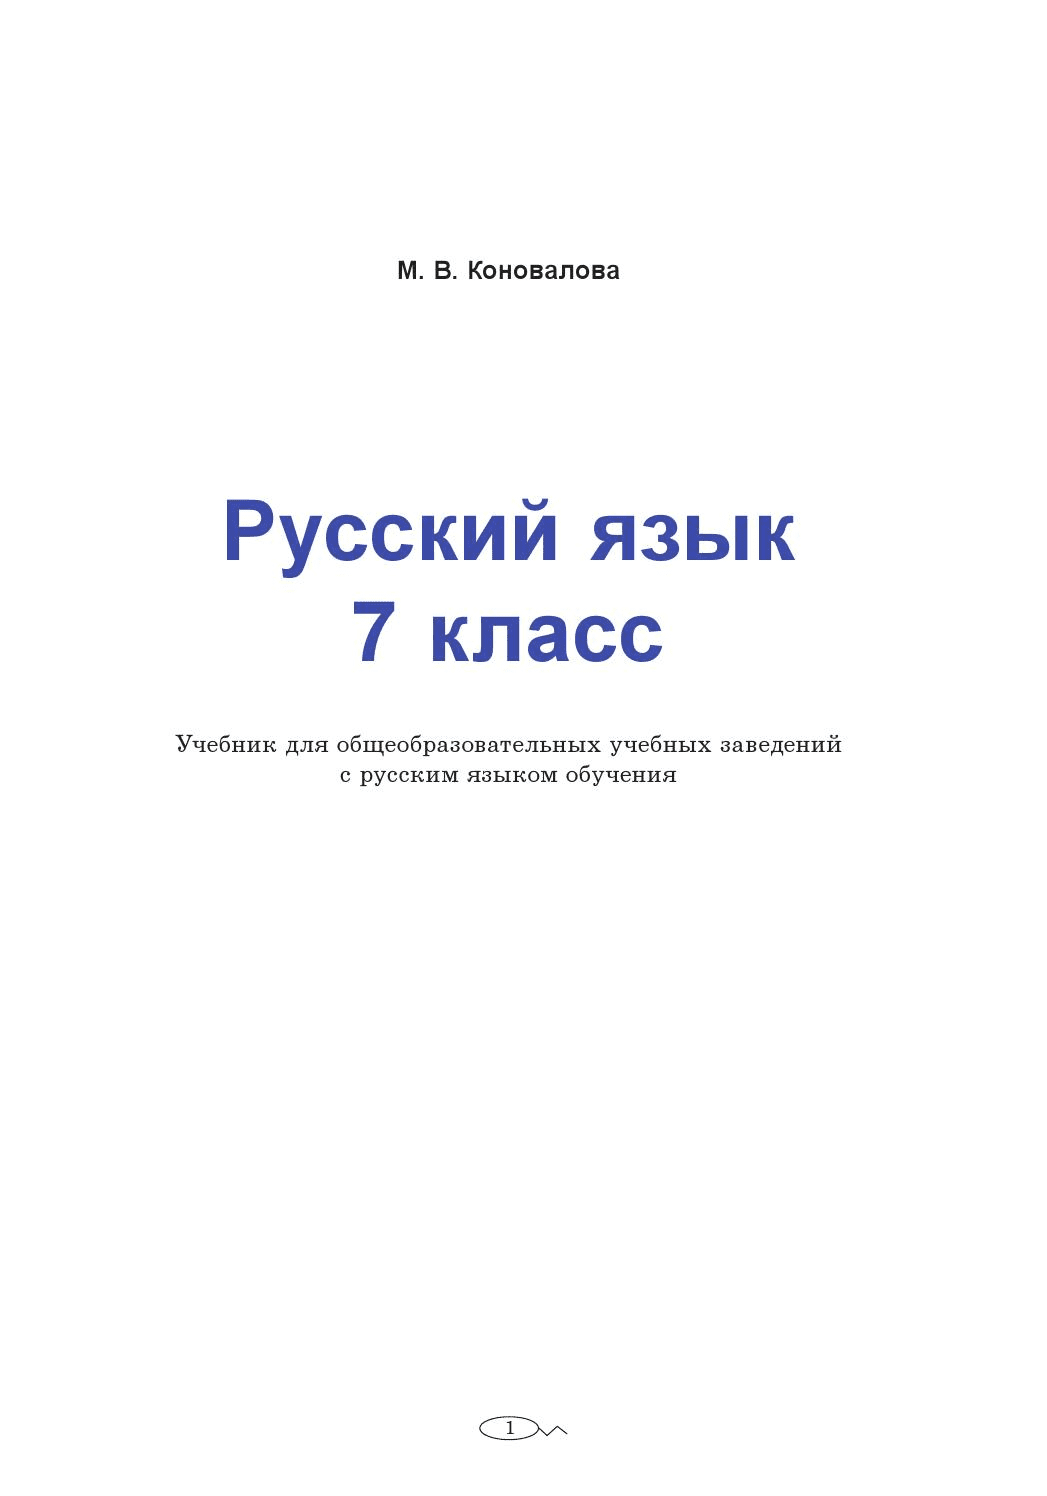 Русский язык 7 класс - Коновалова М. (с русским языком обучения)